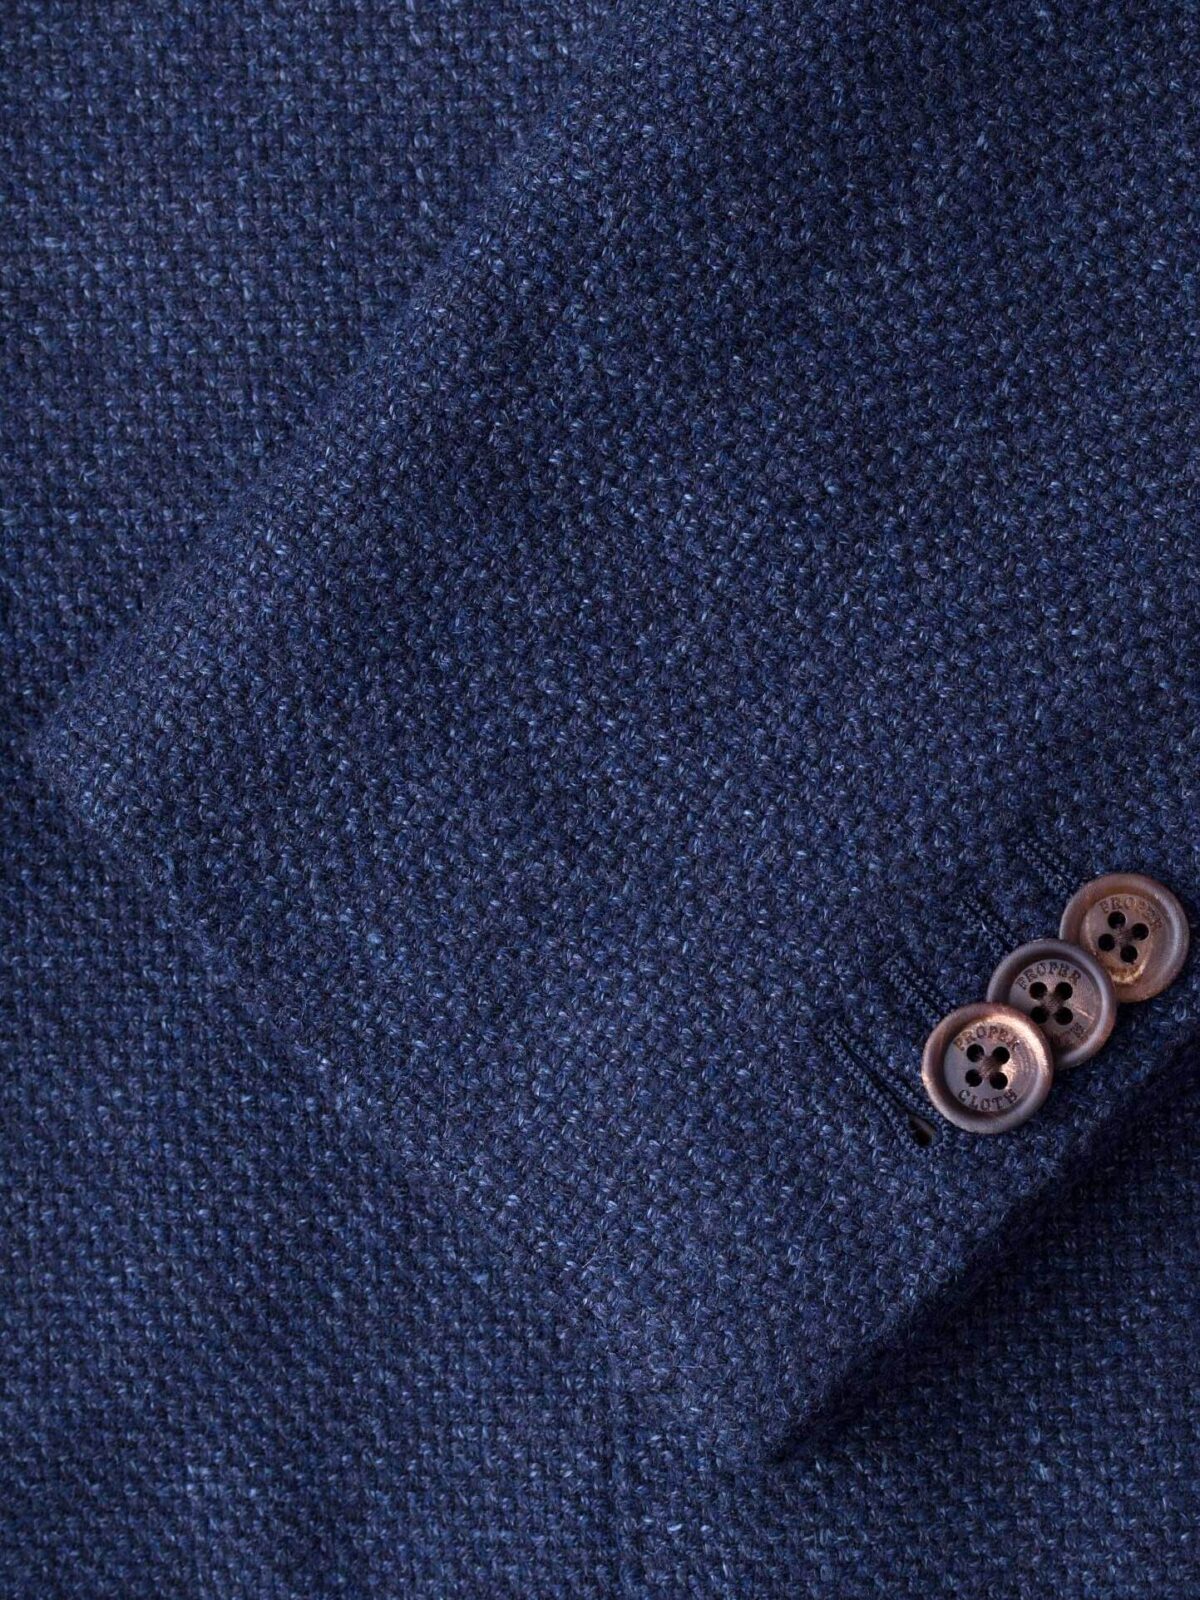 Hudson Navy Basketweave Wool Flannel Jacket